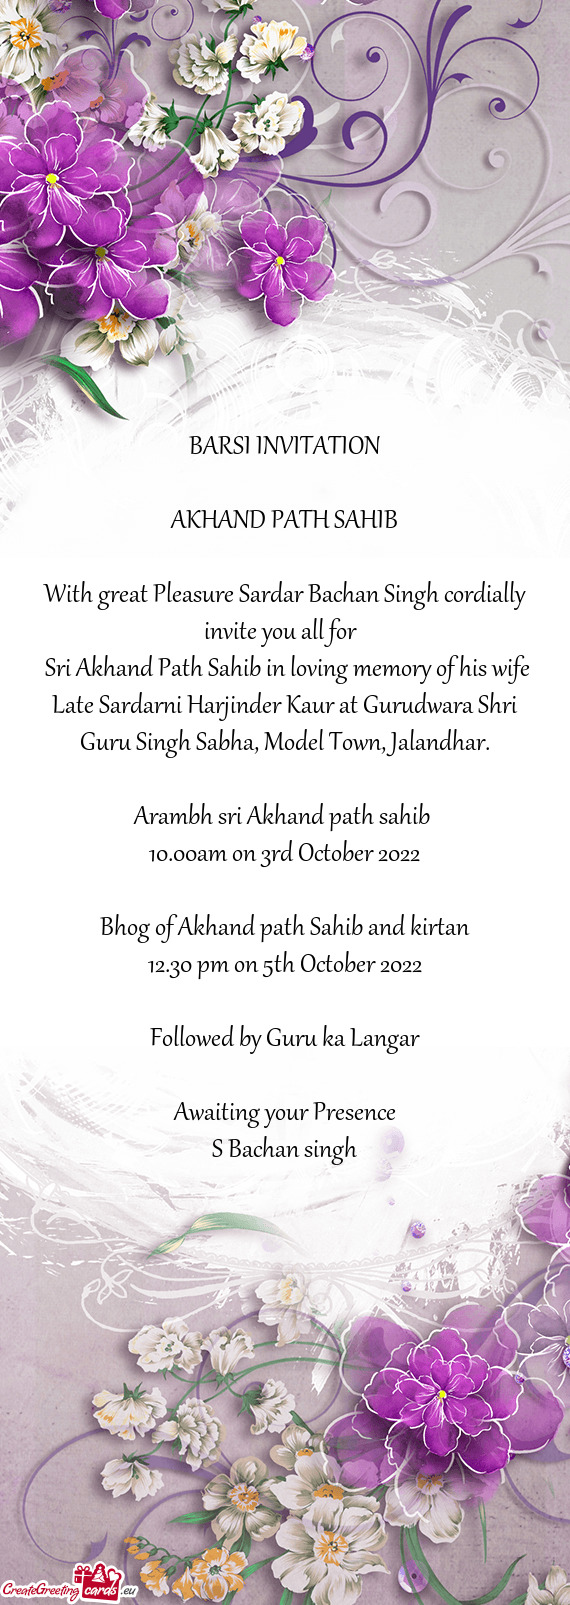 Sri Akhand Path Sahib in loving memory of his wife Late Sardarni Harjinder Kaur at Gurudwara Shri G